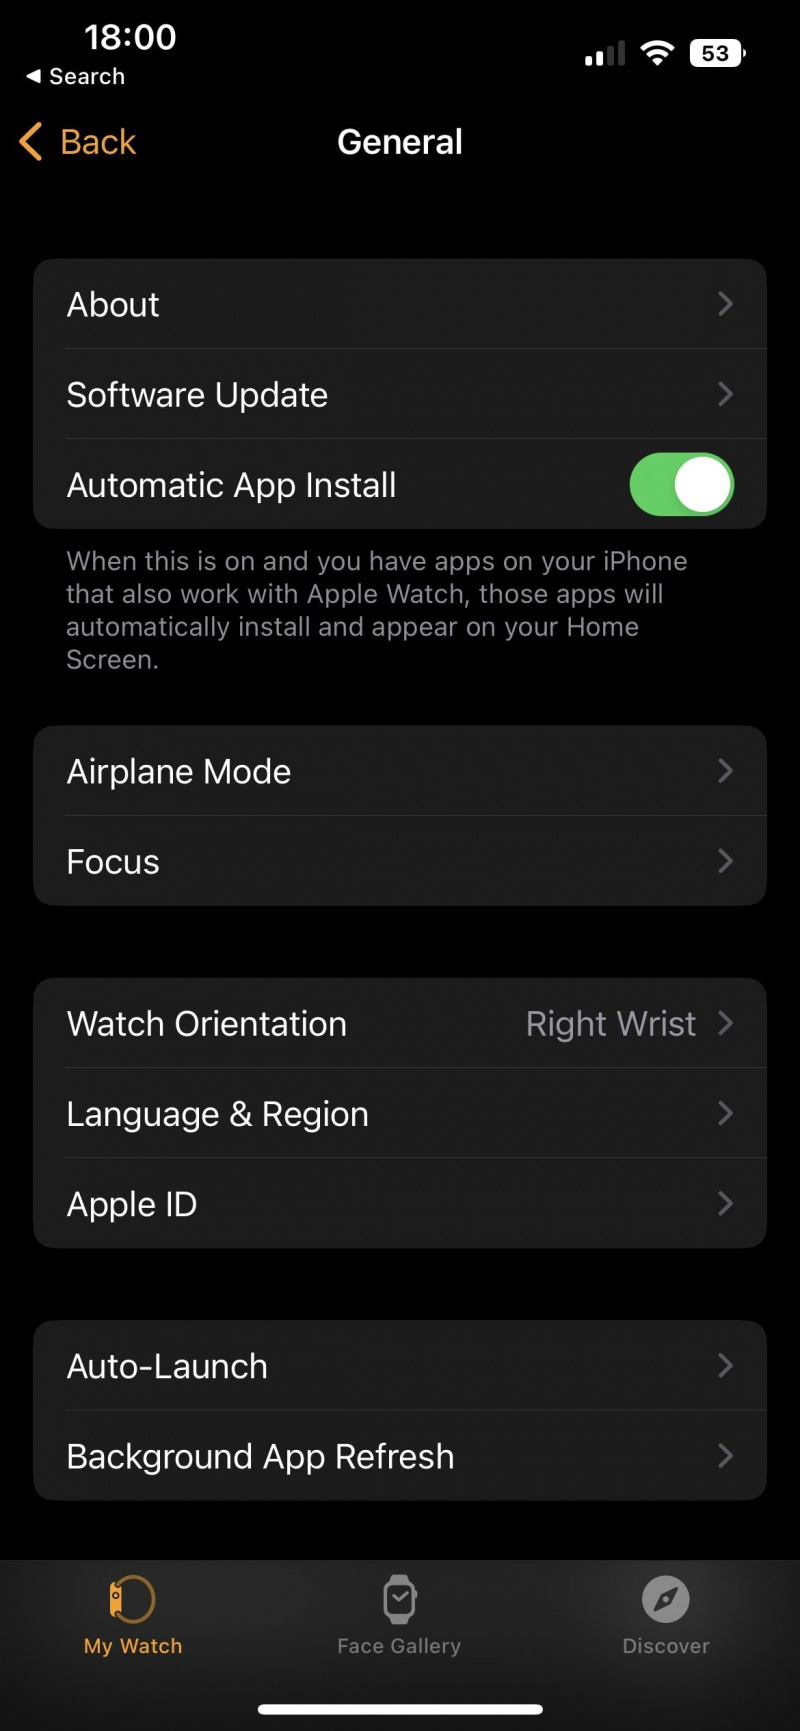   لقطة شاشة لتطبيق Watch تعرض الإعدادات العامة لـ Apple Watch